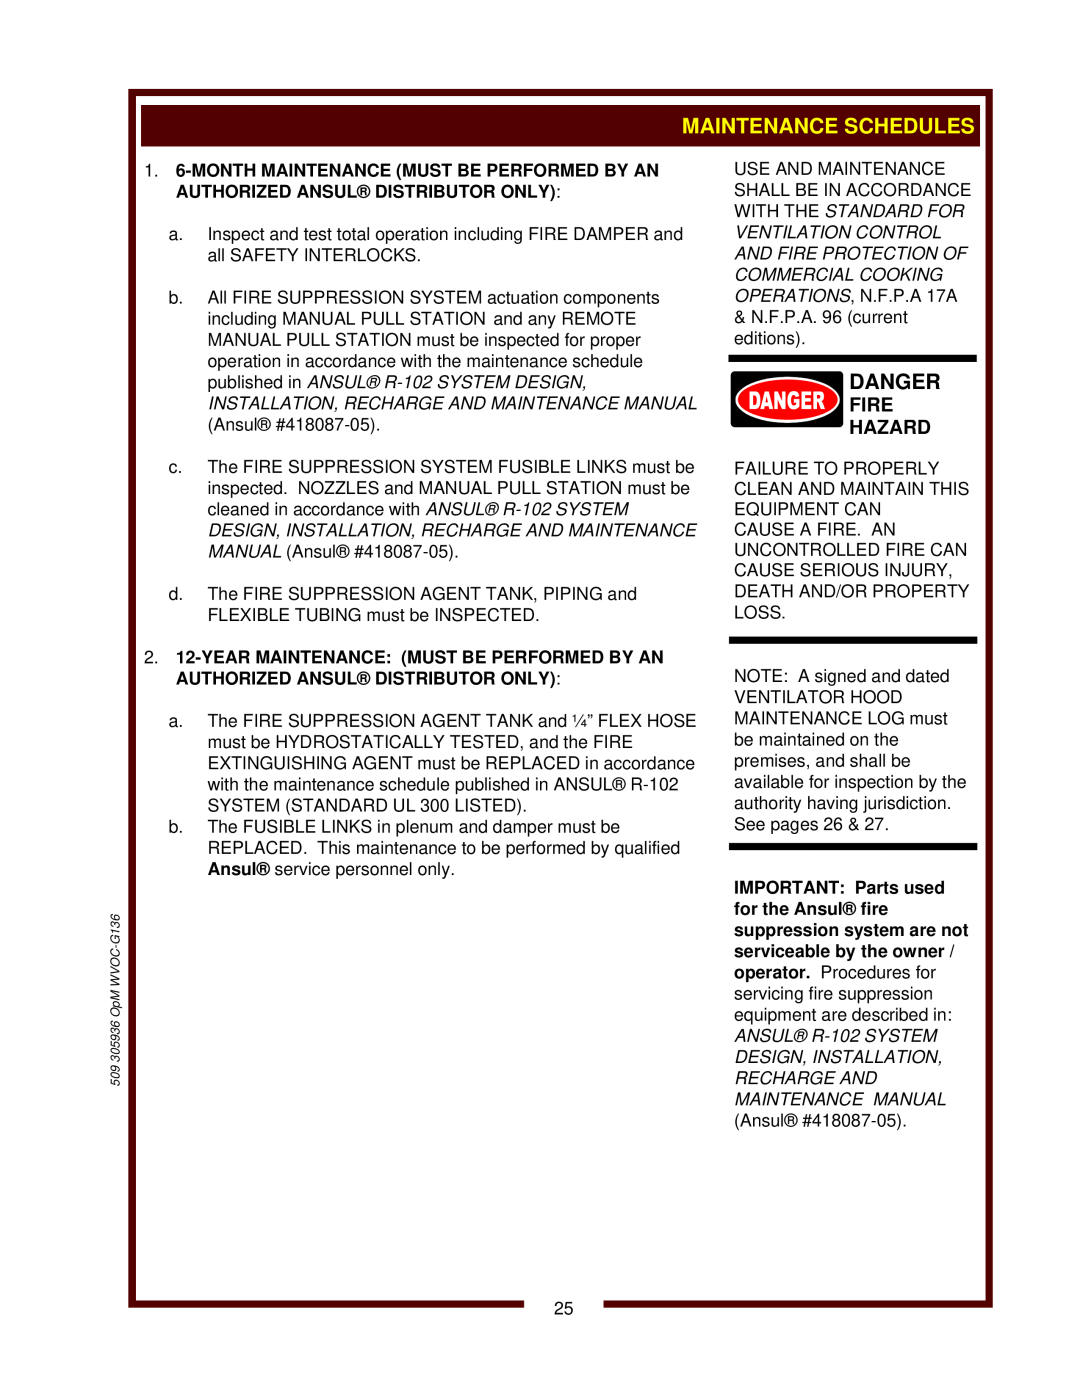 Bloomfield WVOC-G136 operation manual Maintenance Schedules, Danger, Fire Hazard 